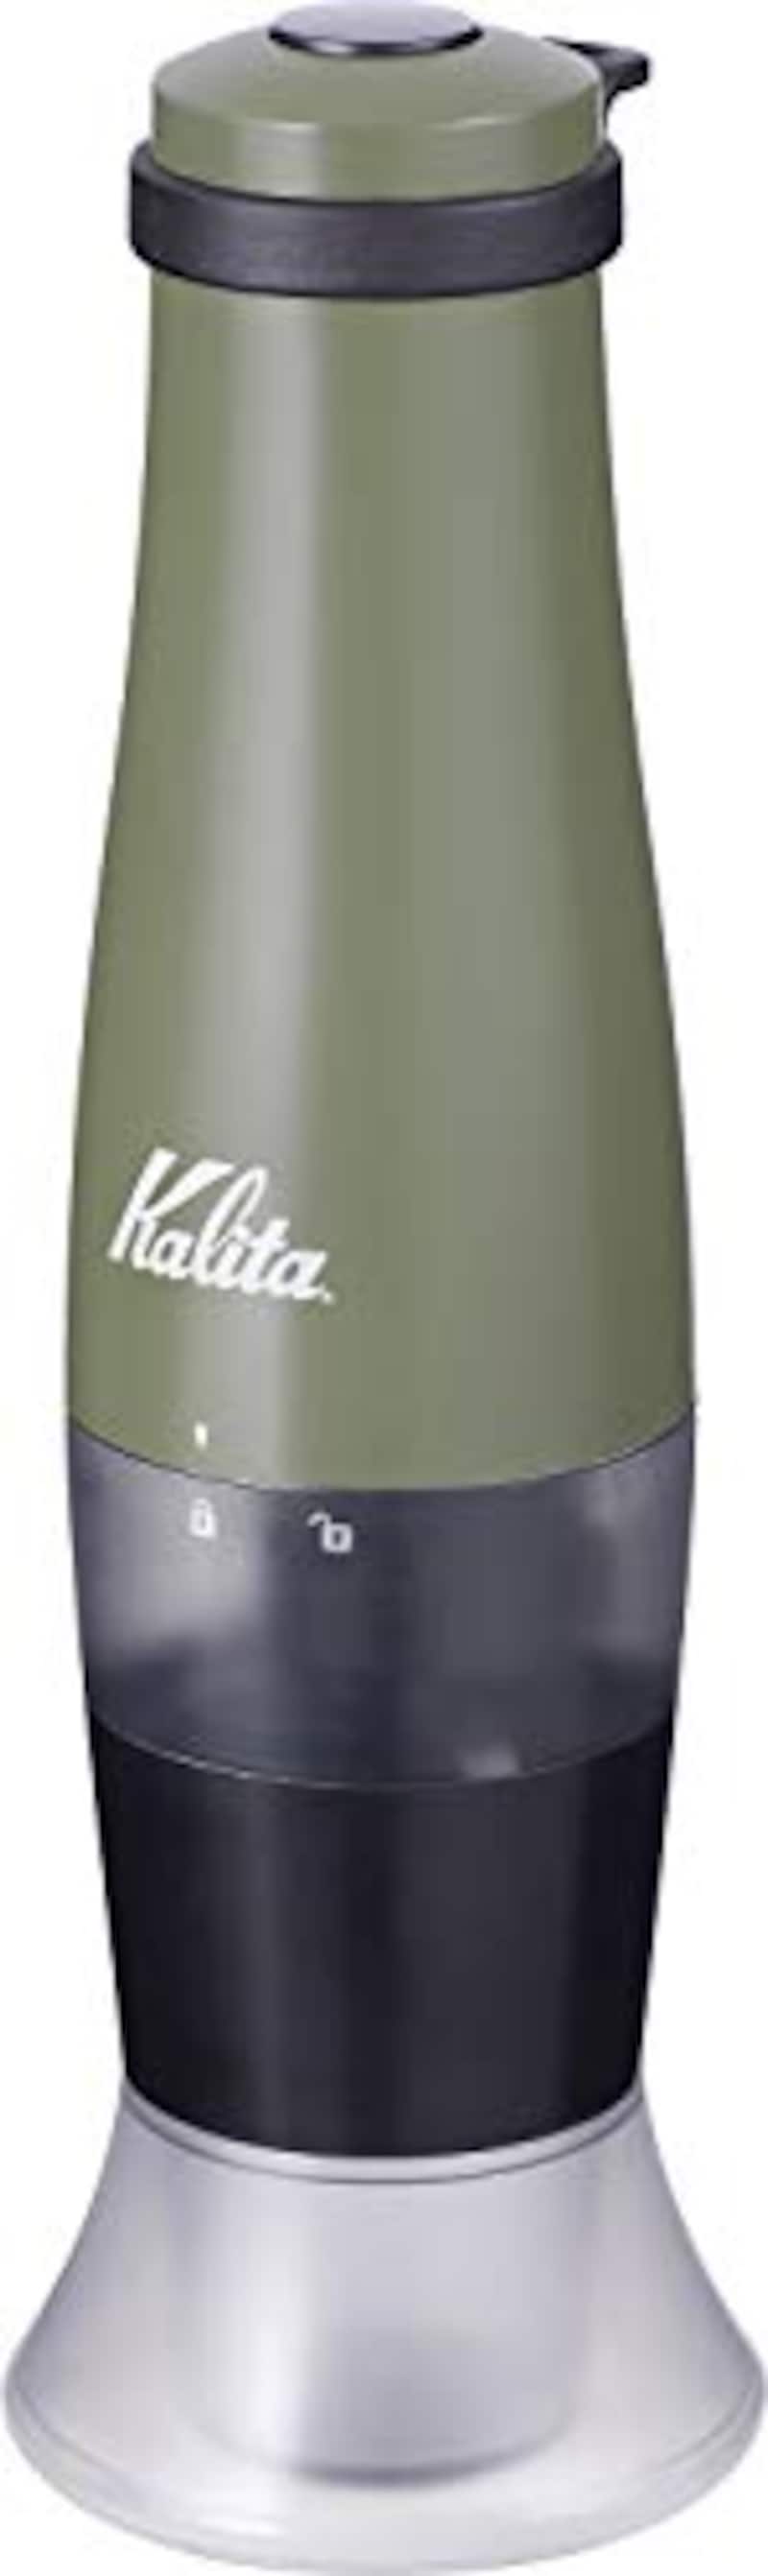 Kalita,電池式 コーヒーグラインダー